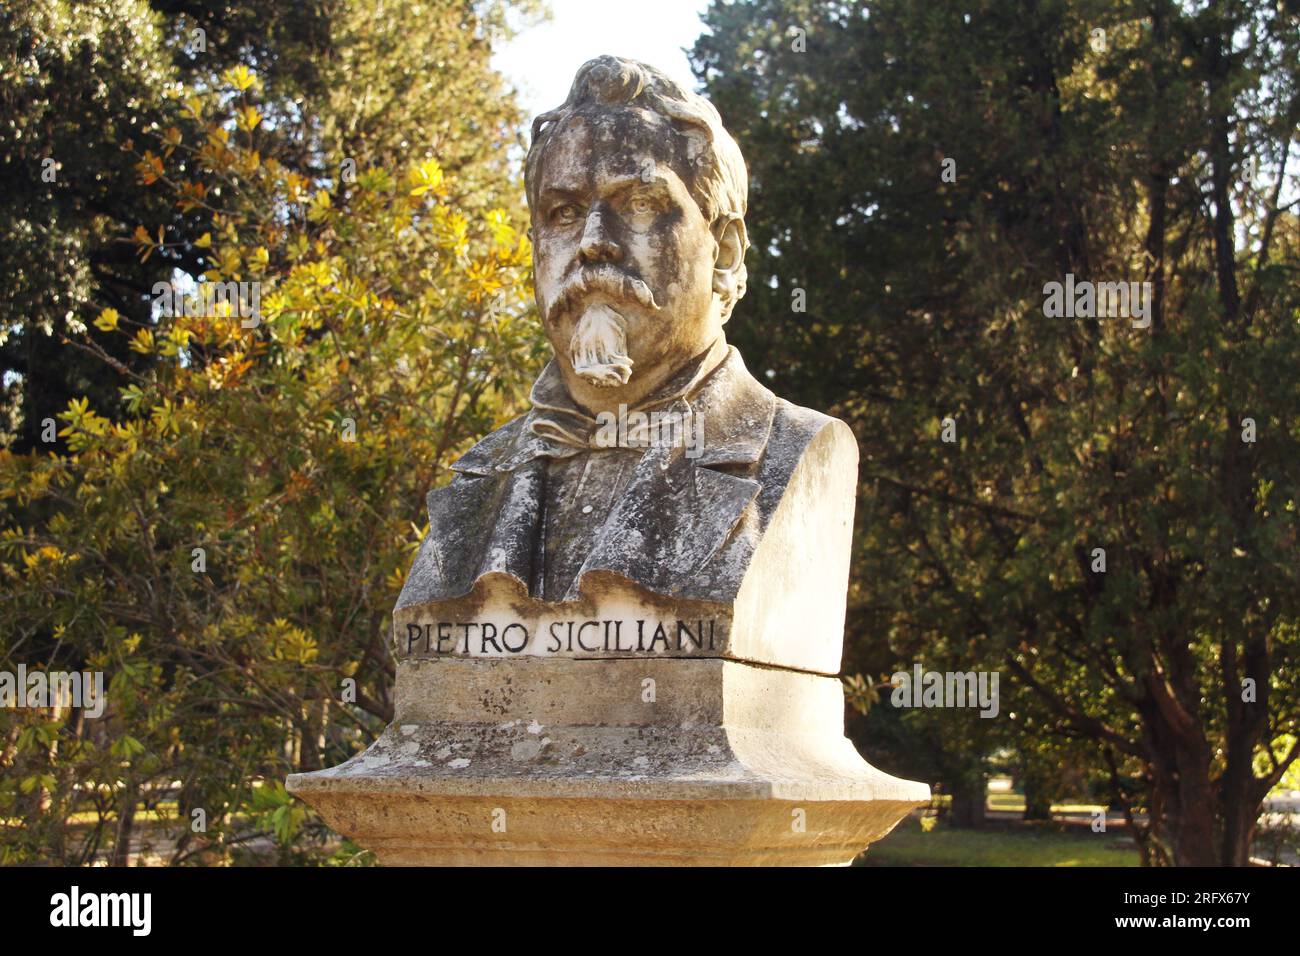 Lecce, Italy. Bust of the 19th century educator, philosopher and physician Pietro Siciliani in Giuseppe Garibaldi Park/ Villa Comunale. Stock Photo